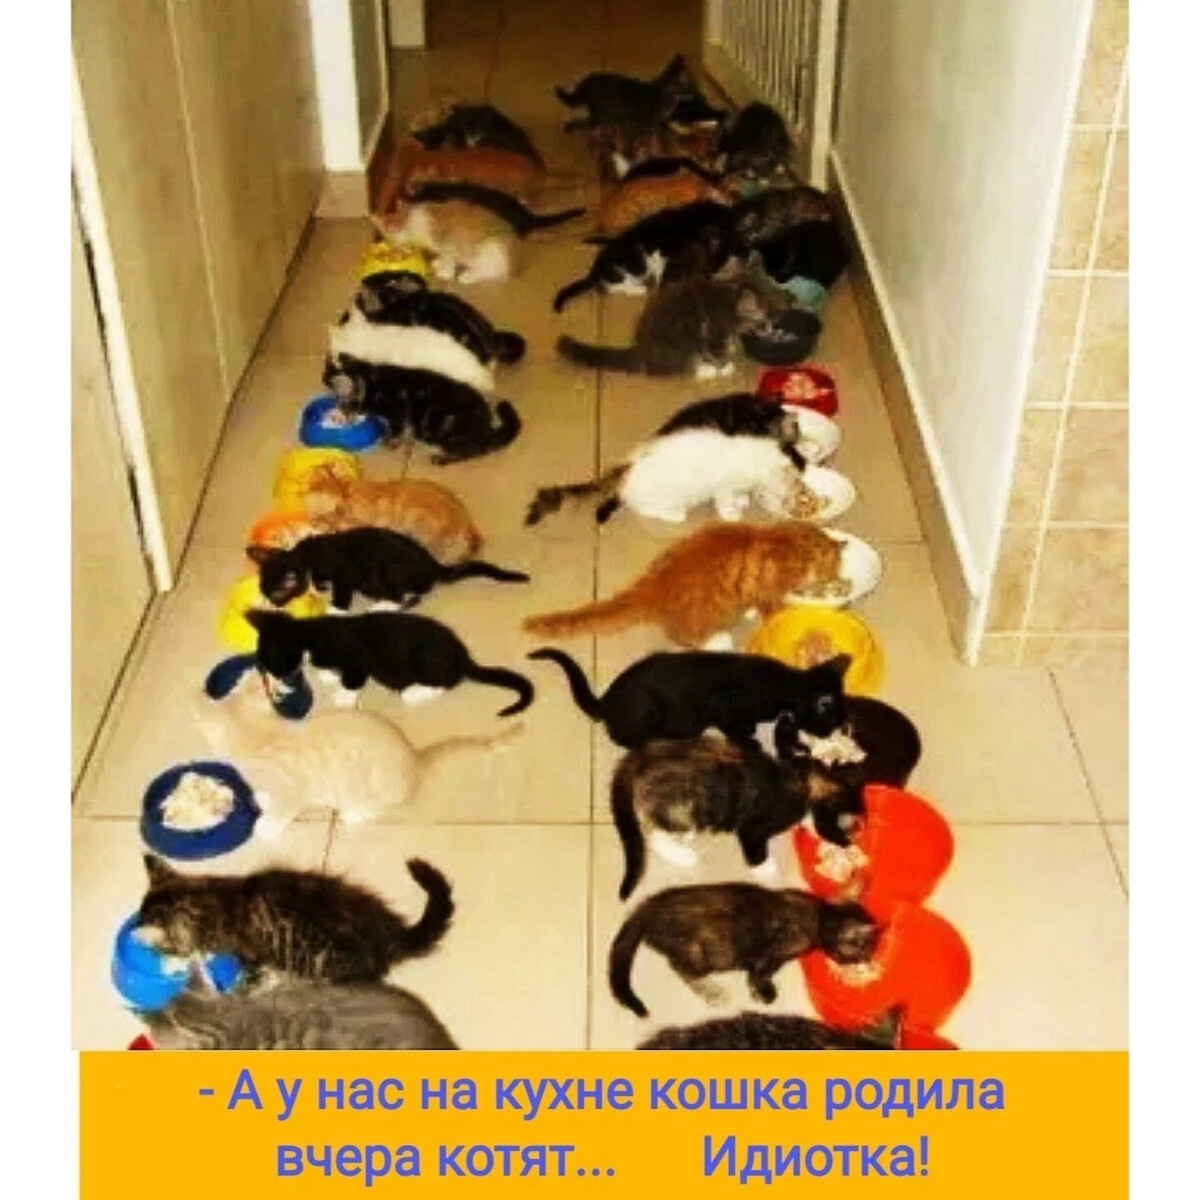 Кошки когда можно на улицу. Много котов в квартире. Коты в квартире. Котенок в квартире. Кошачий садик.